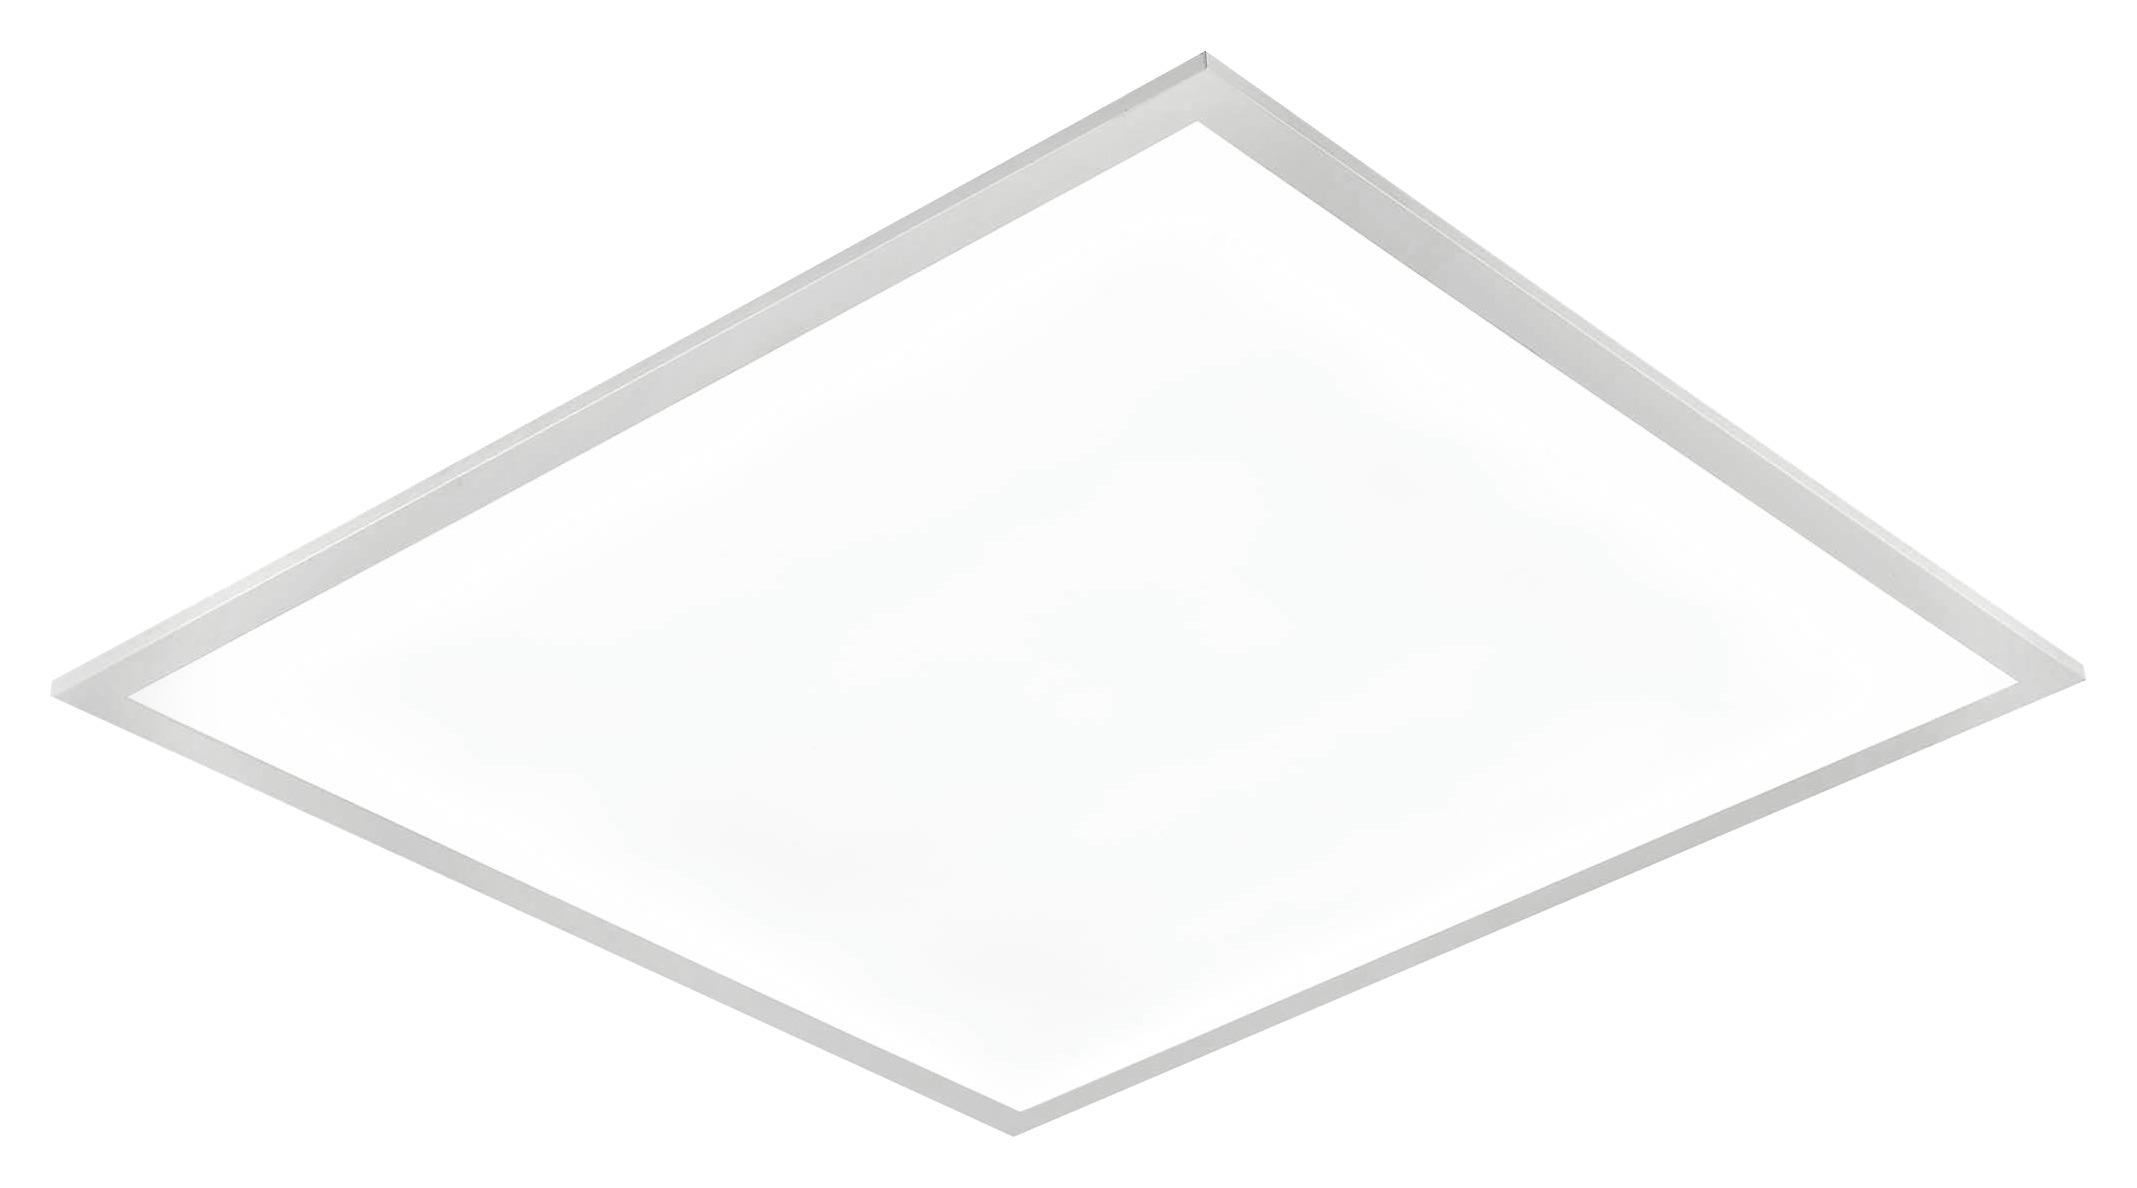 LED-Deckenleuchte Geör max. 30 Watt - Weiß, MODERN, Kunststoff/Metall (45/45/6cm) - Premium Living